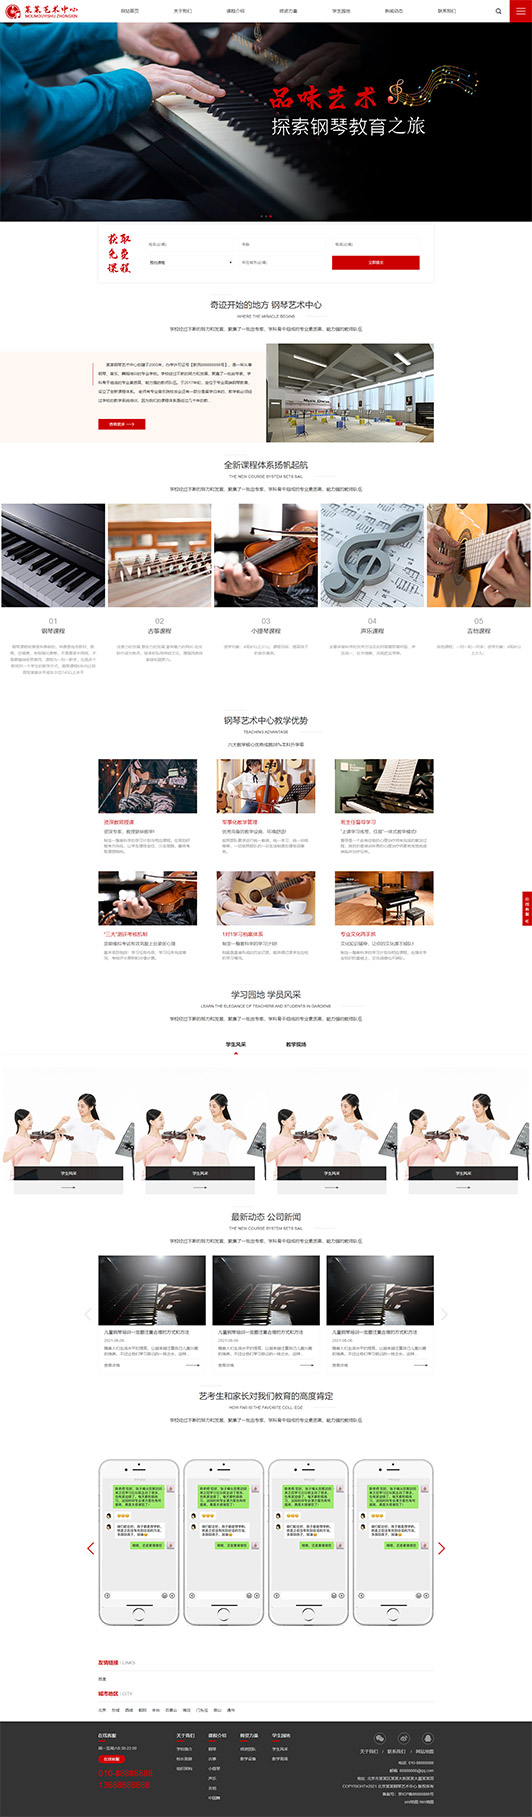 钢琴艺术培训公司响应式企业网站